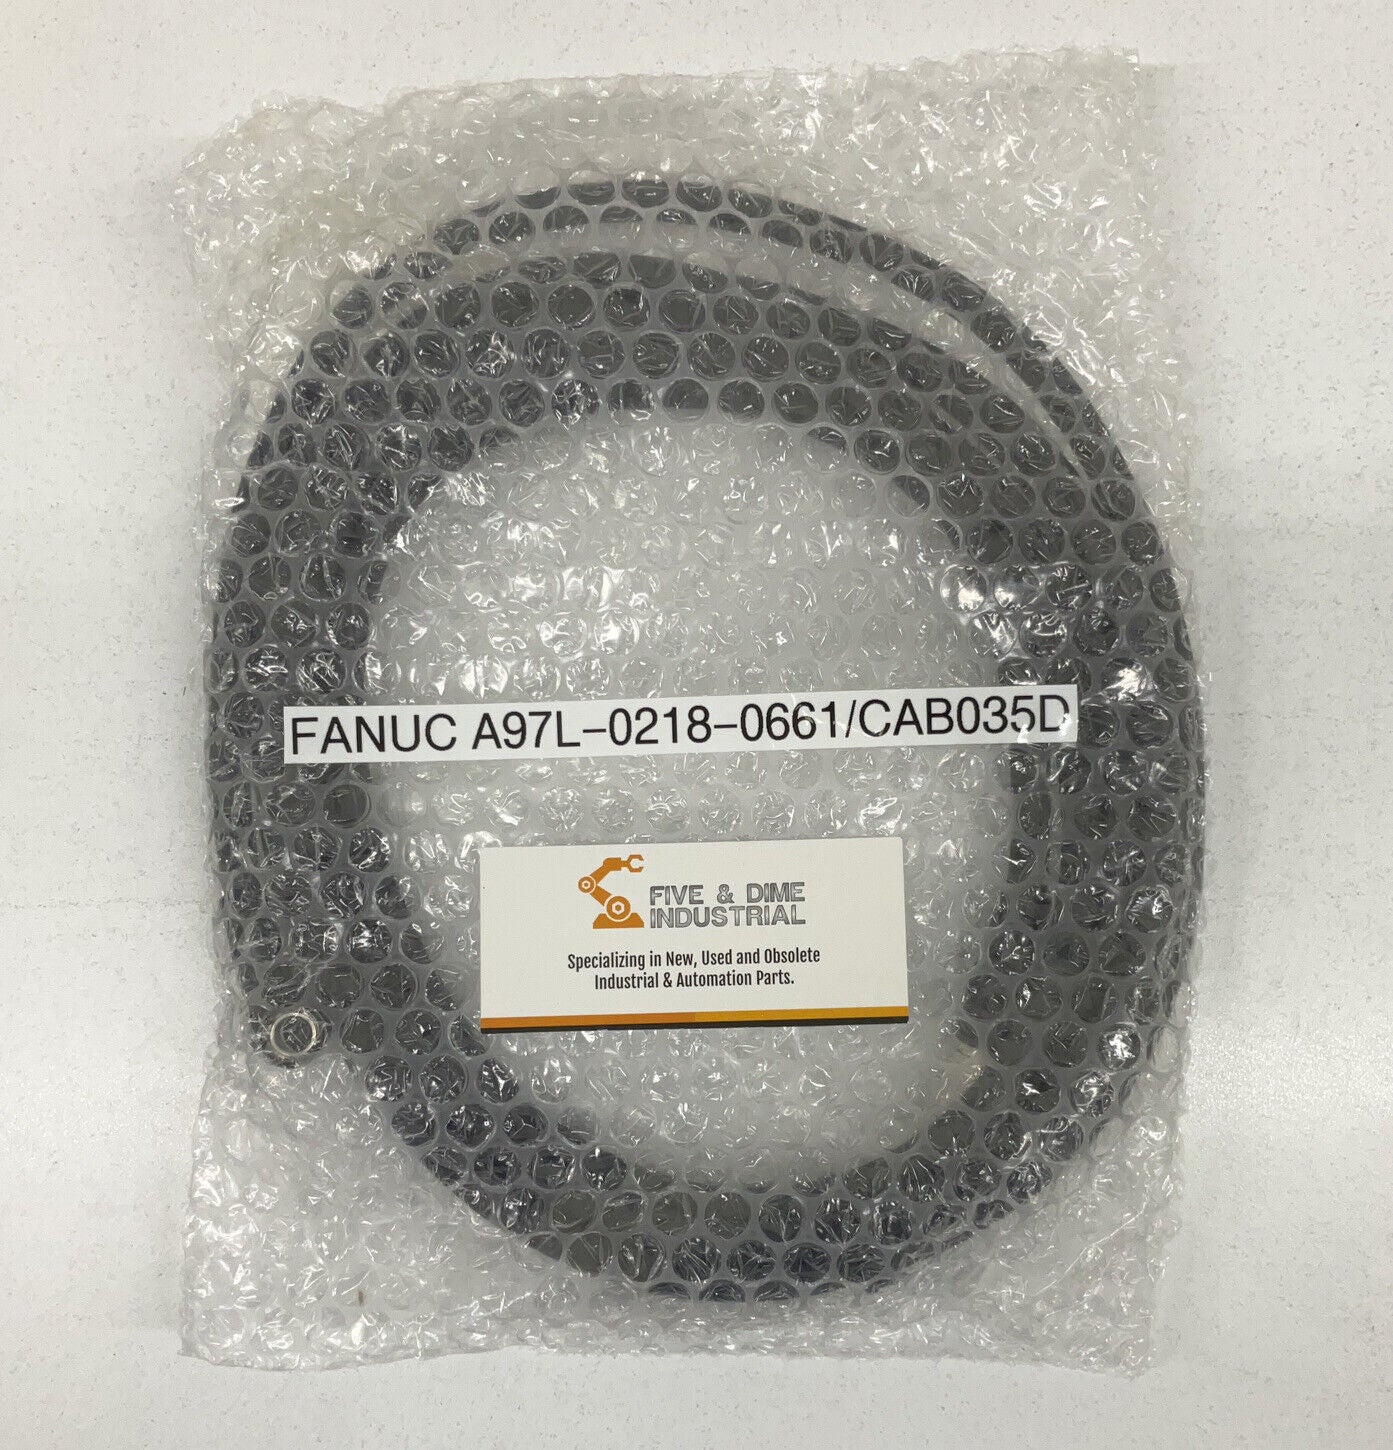 Fanuc A97L-0218-0661/CAB035D Cable Cordset (CL323)